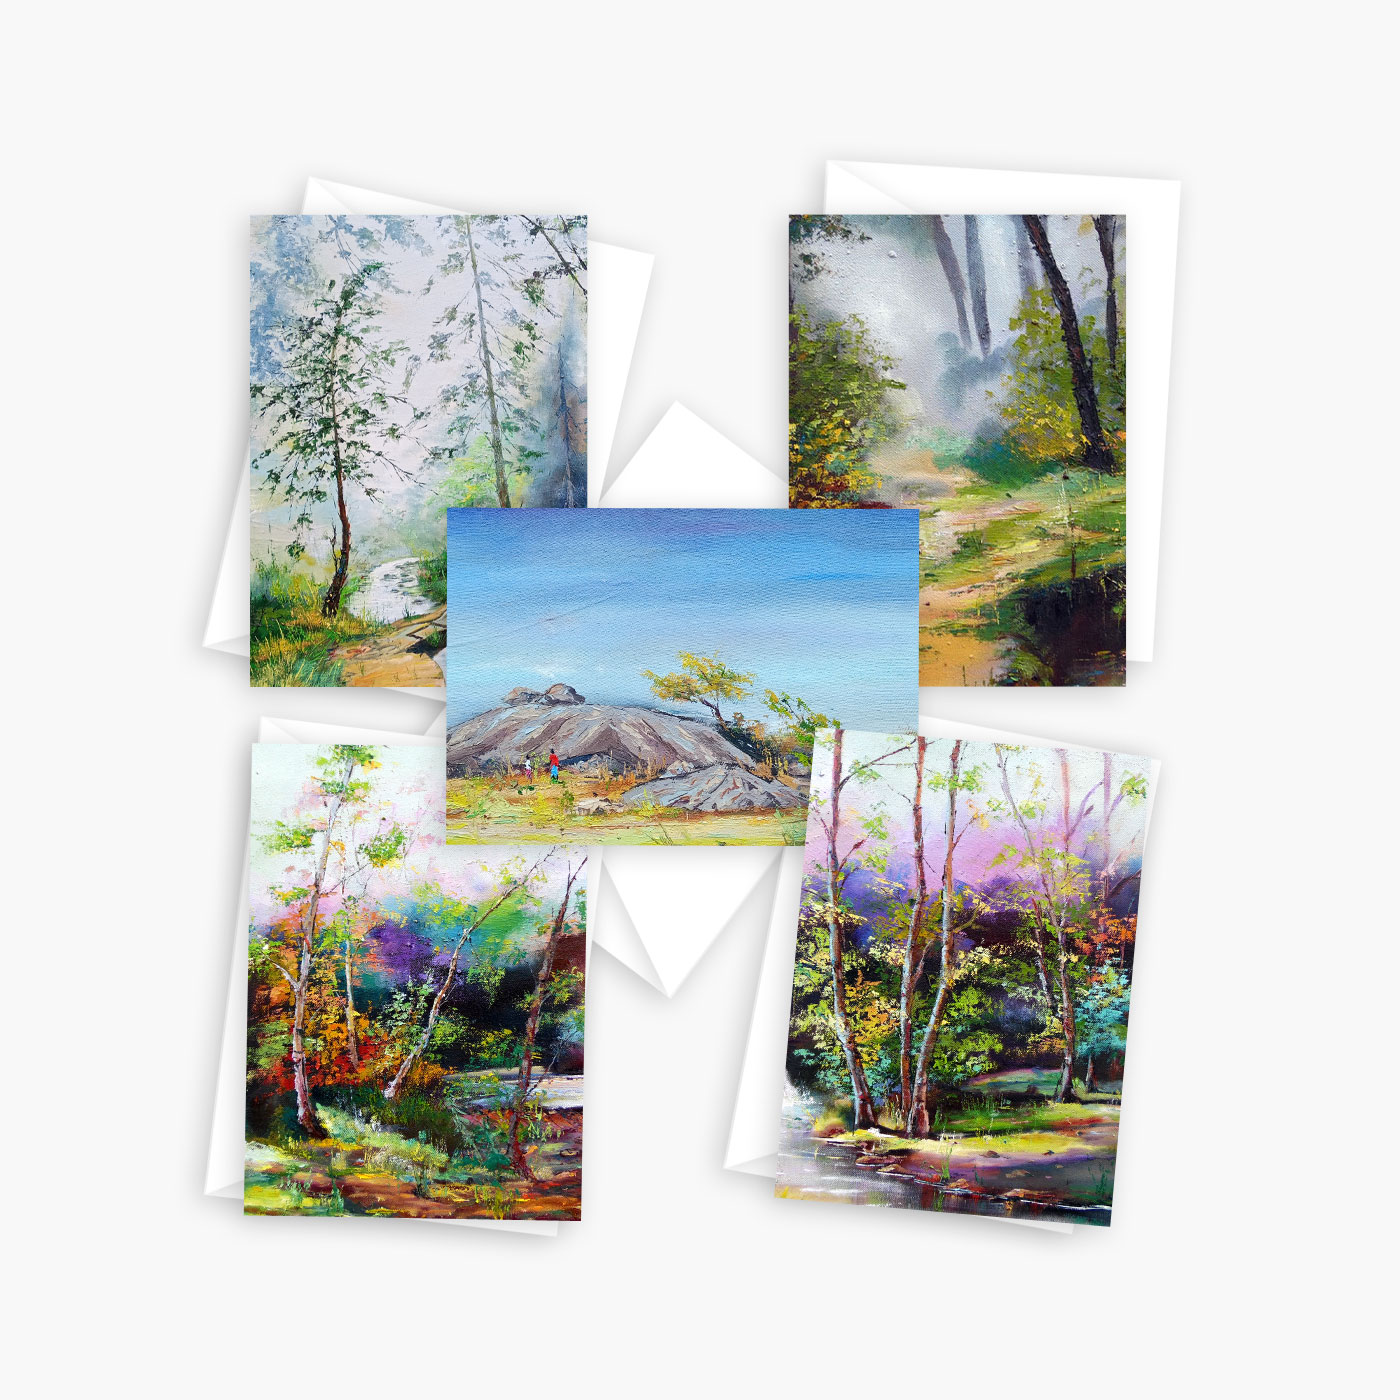 Whimsical Landscape Art Card Set – 10 assorted cards